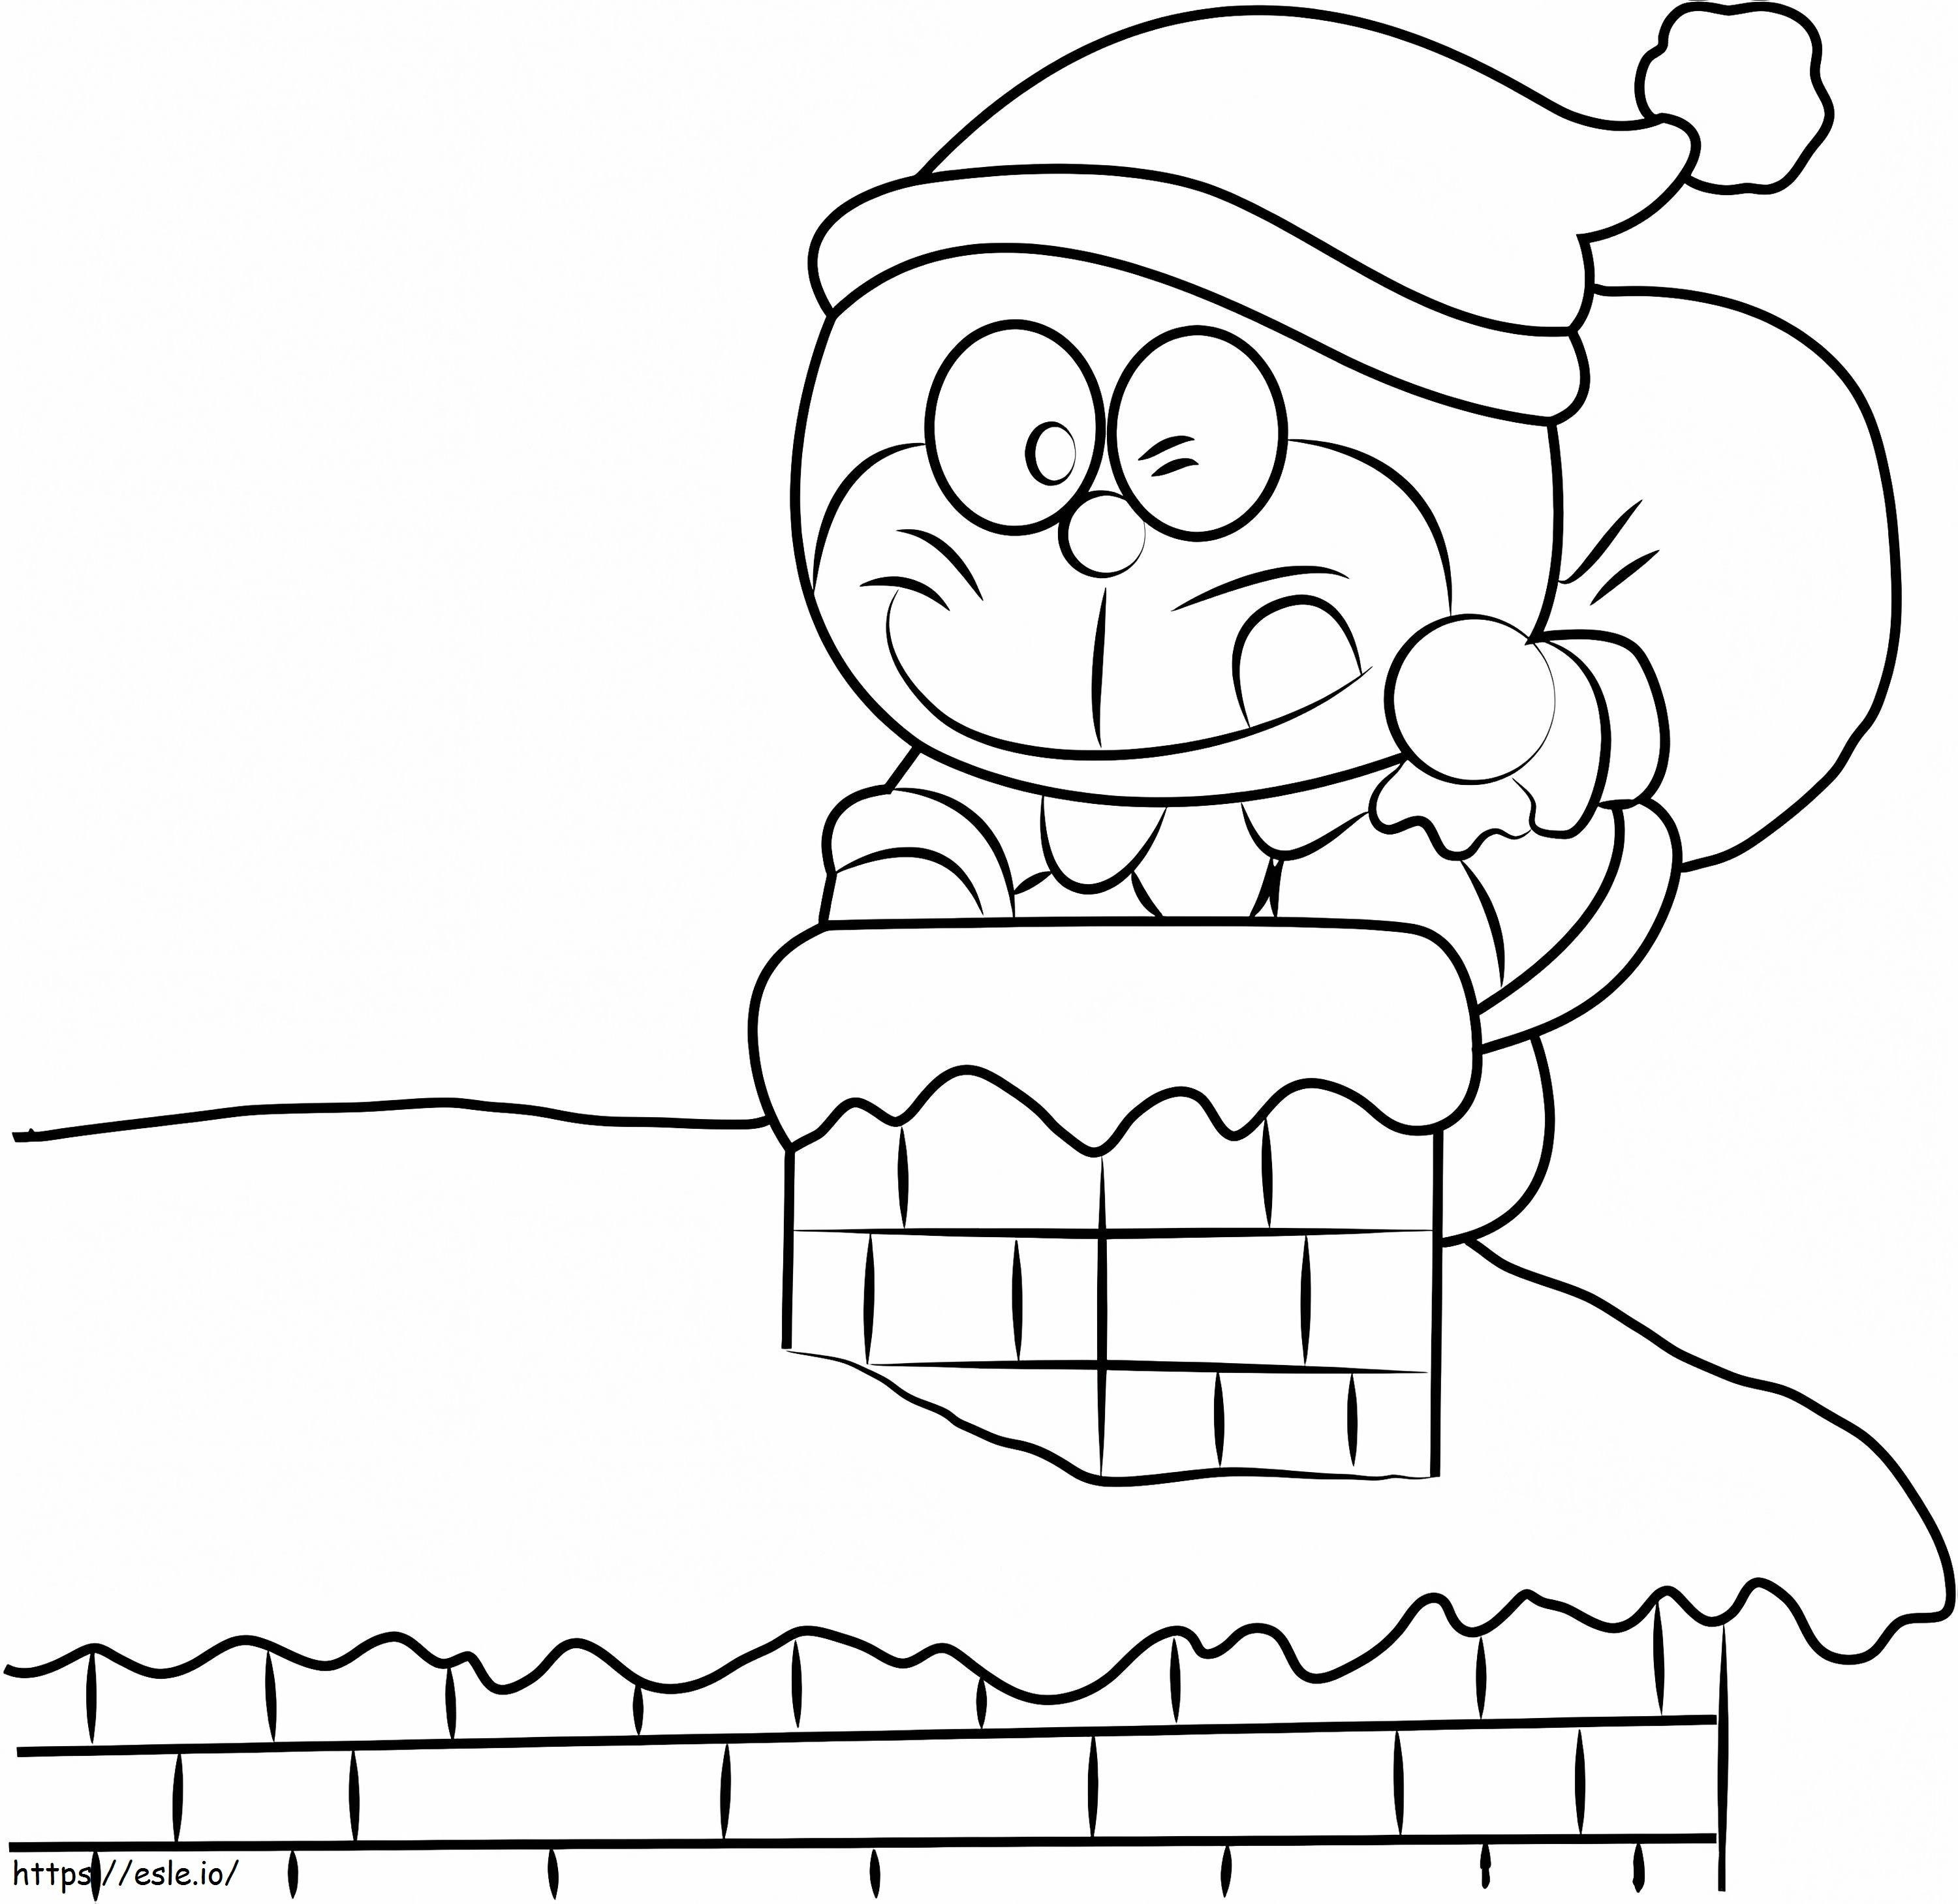 1530676495 Kerst Doraemon A4 kleurplaat kleurplaat